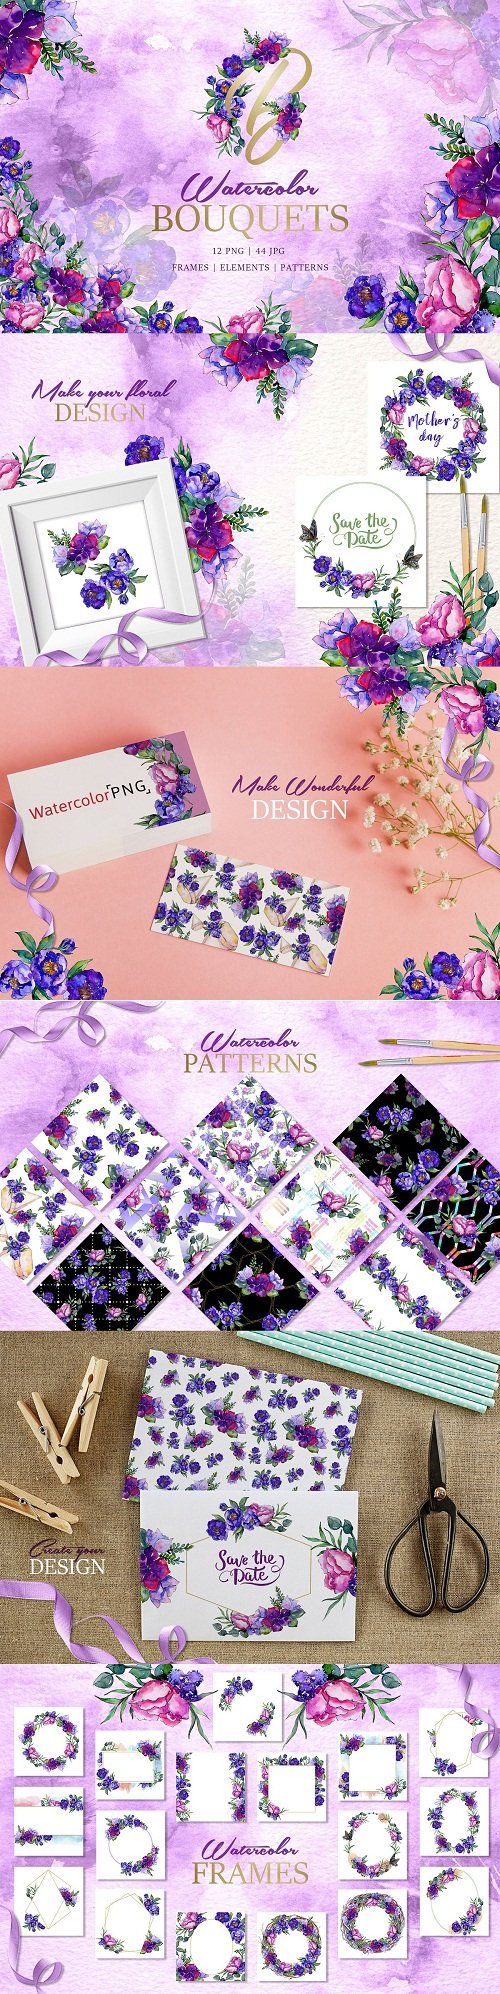 Bouquets of purple flowers - 3451531